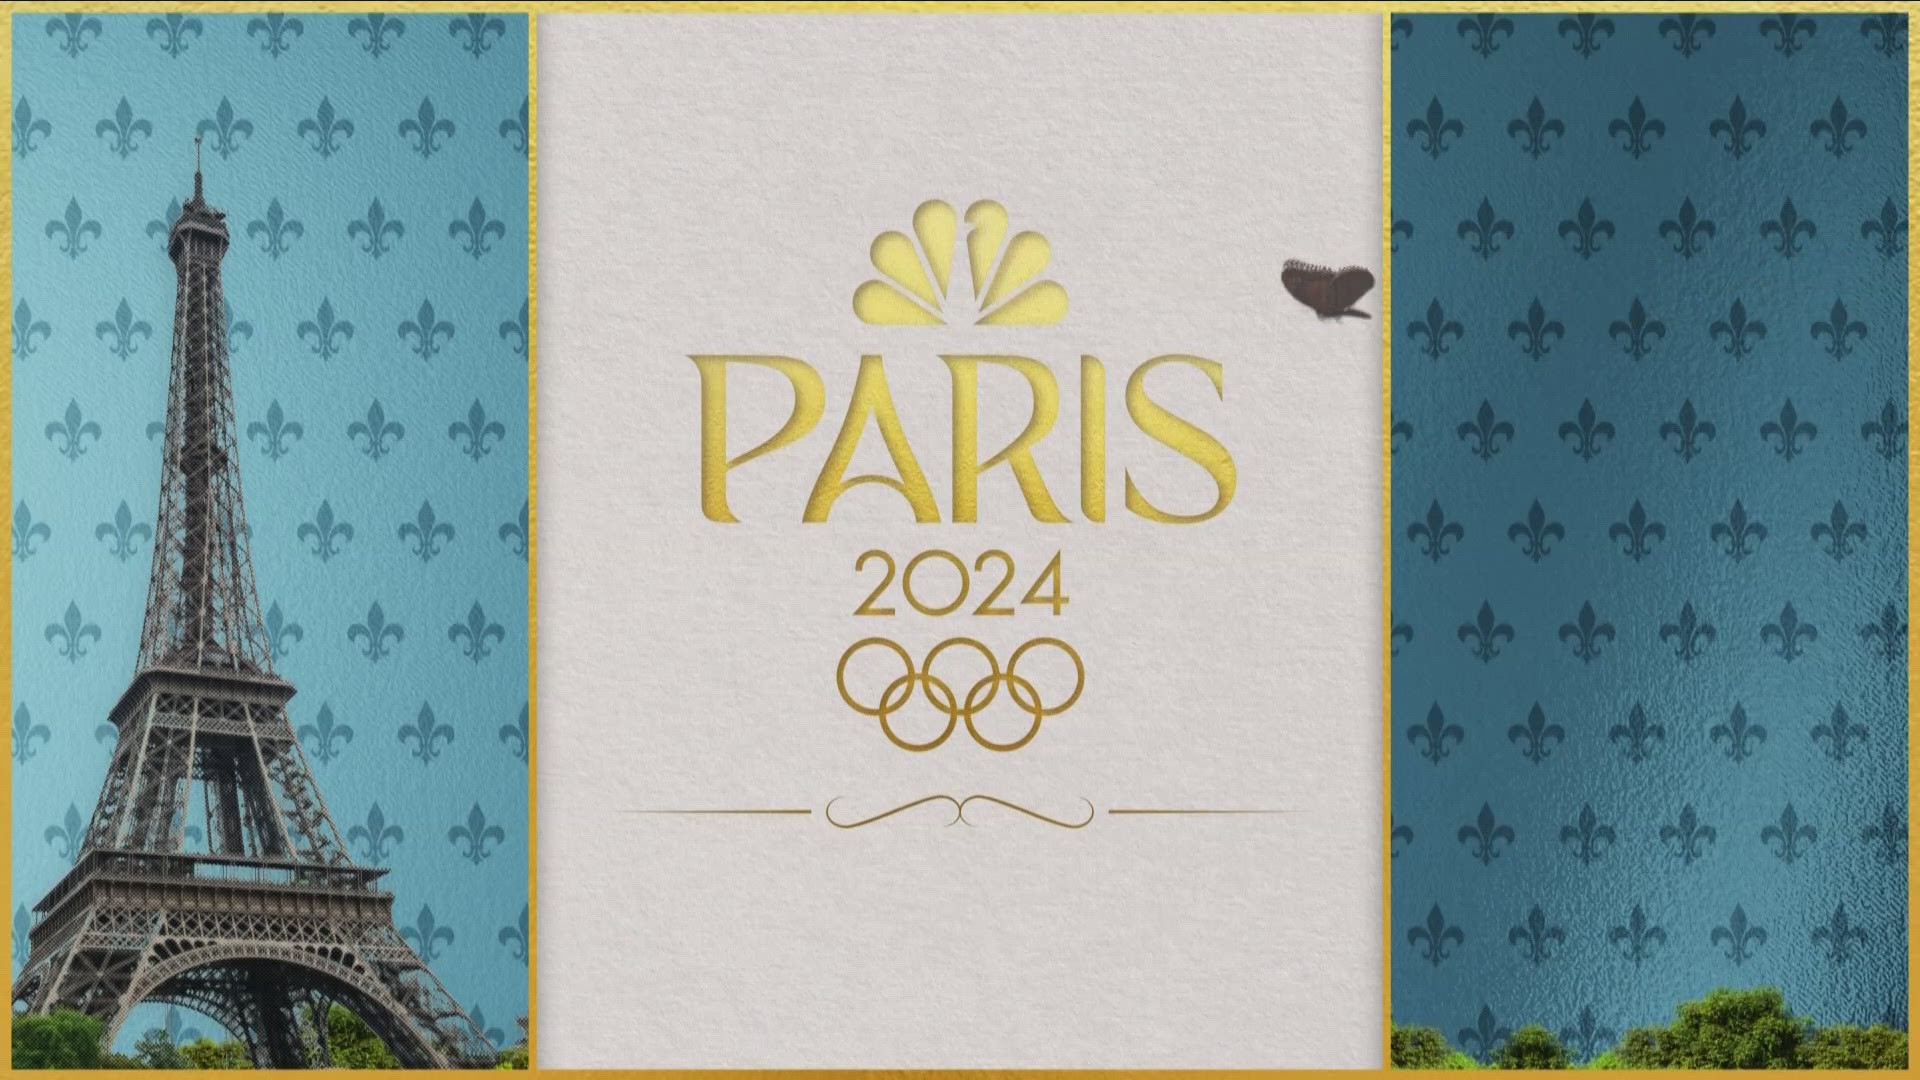 100 days away from 2024 Paris Olympics -- 04/17/24